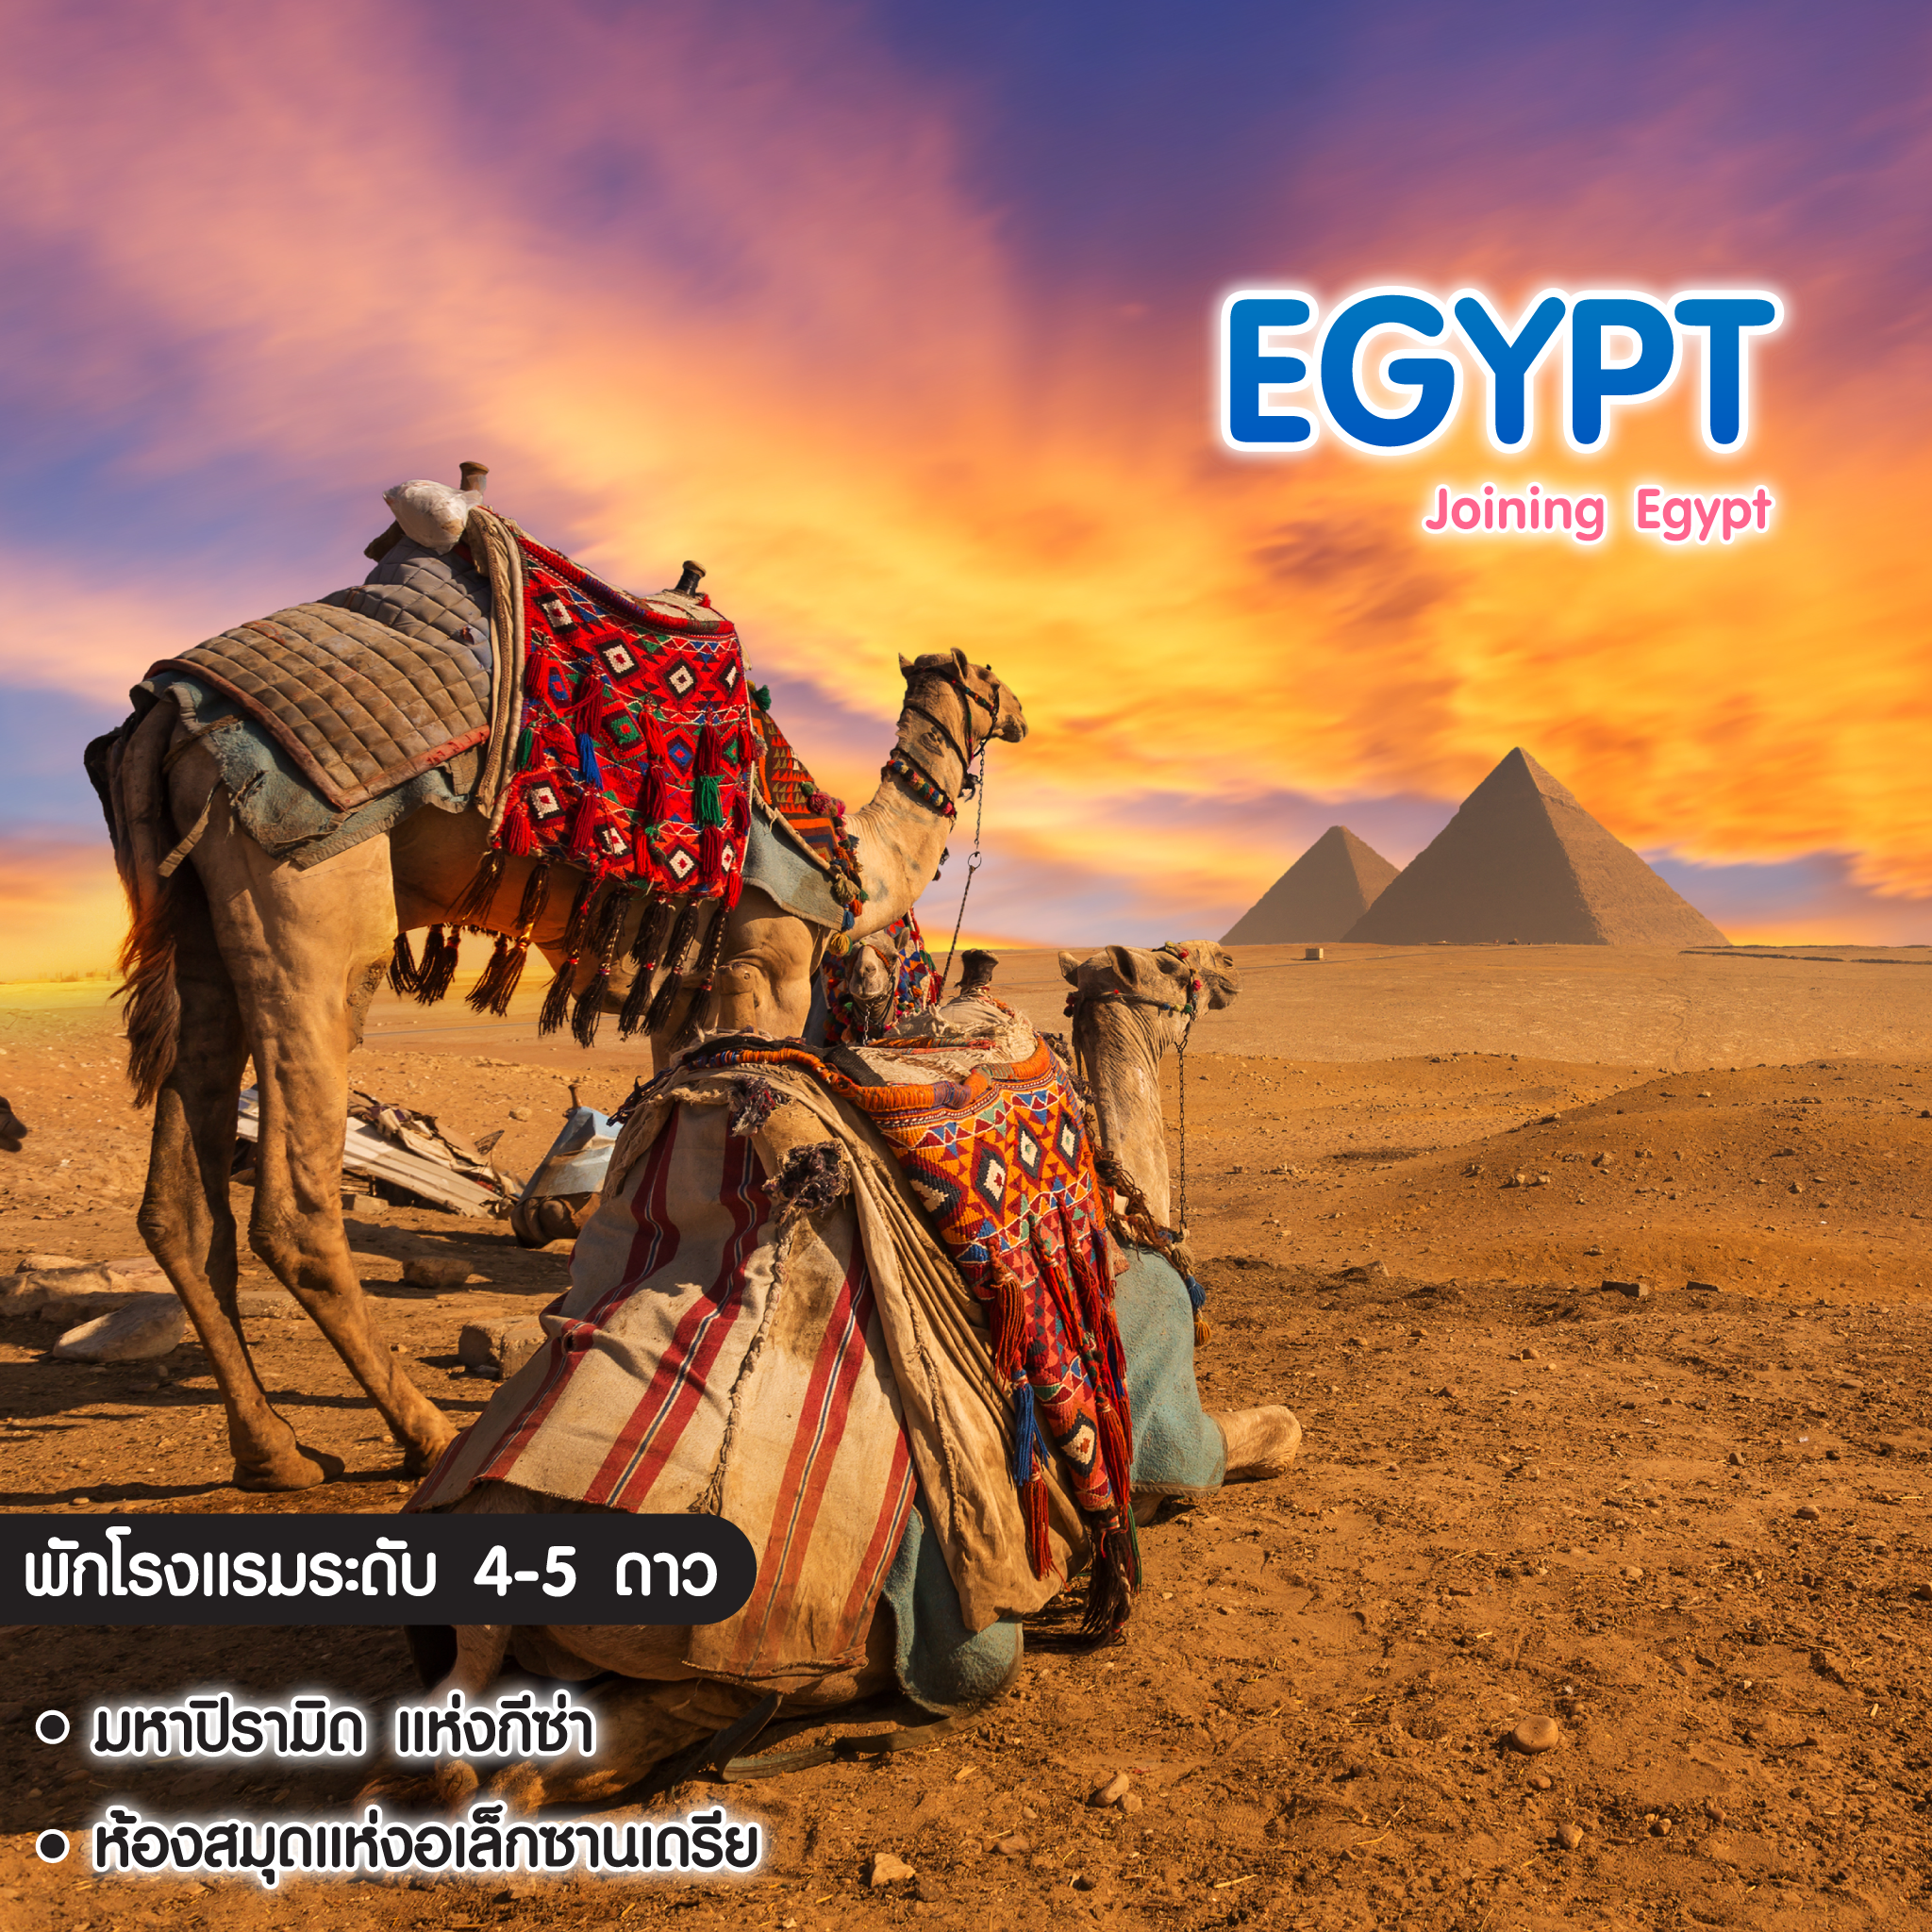 ทัวร์อียิปต์ Joining Egypt